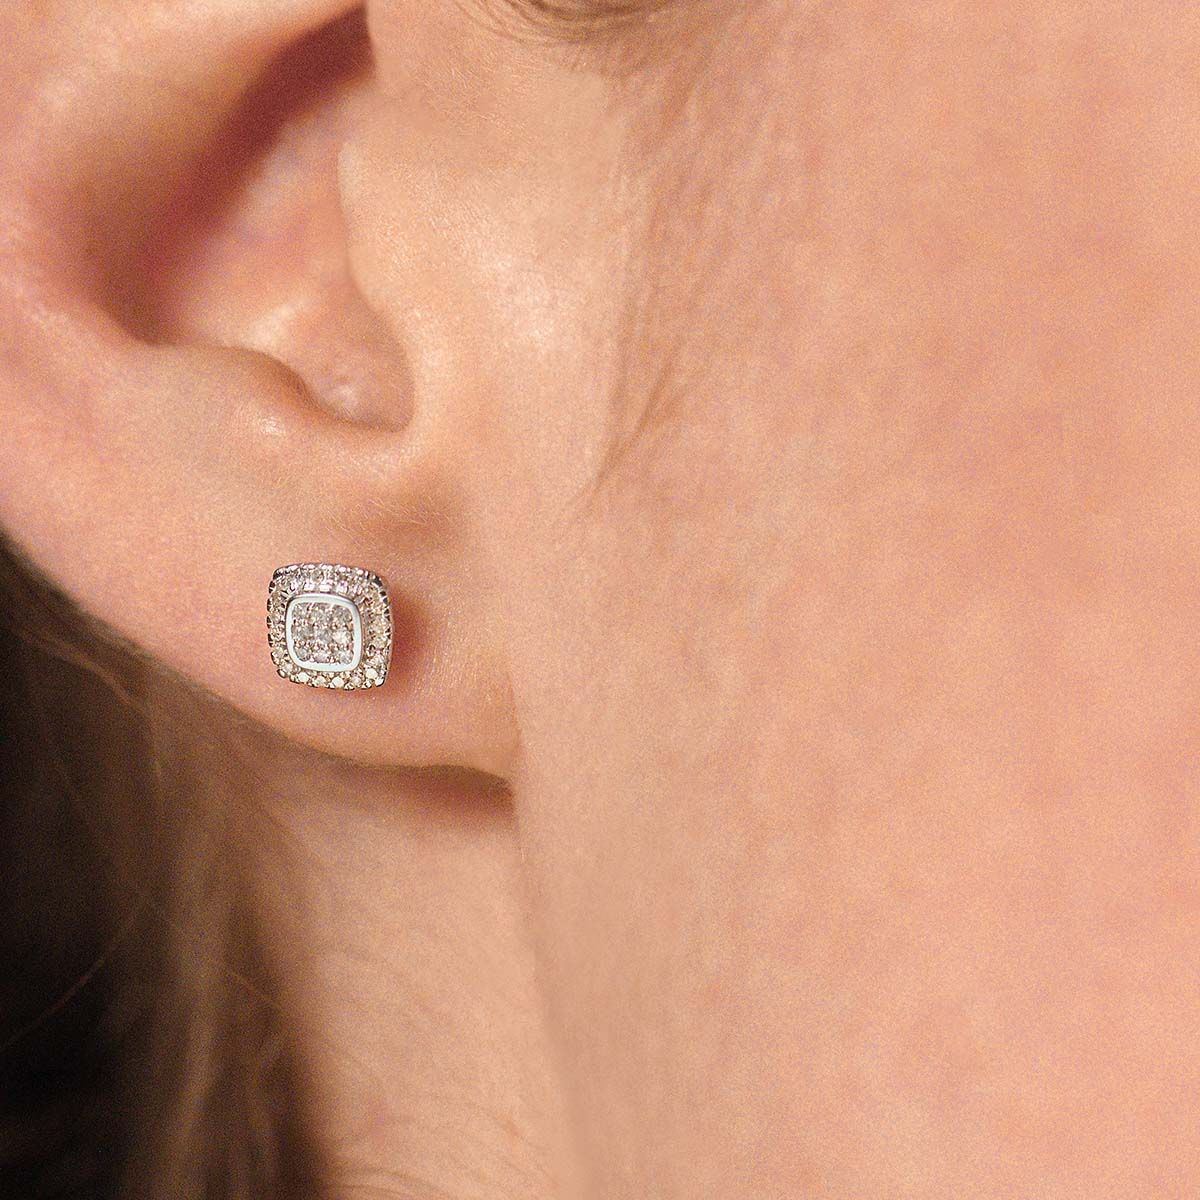 Boucles d'oreilles Or Blanc et Diamants 0,15 carat "SWEET ILLUSION"